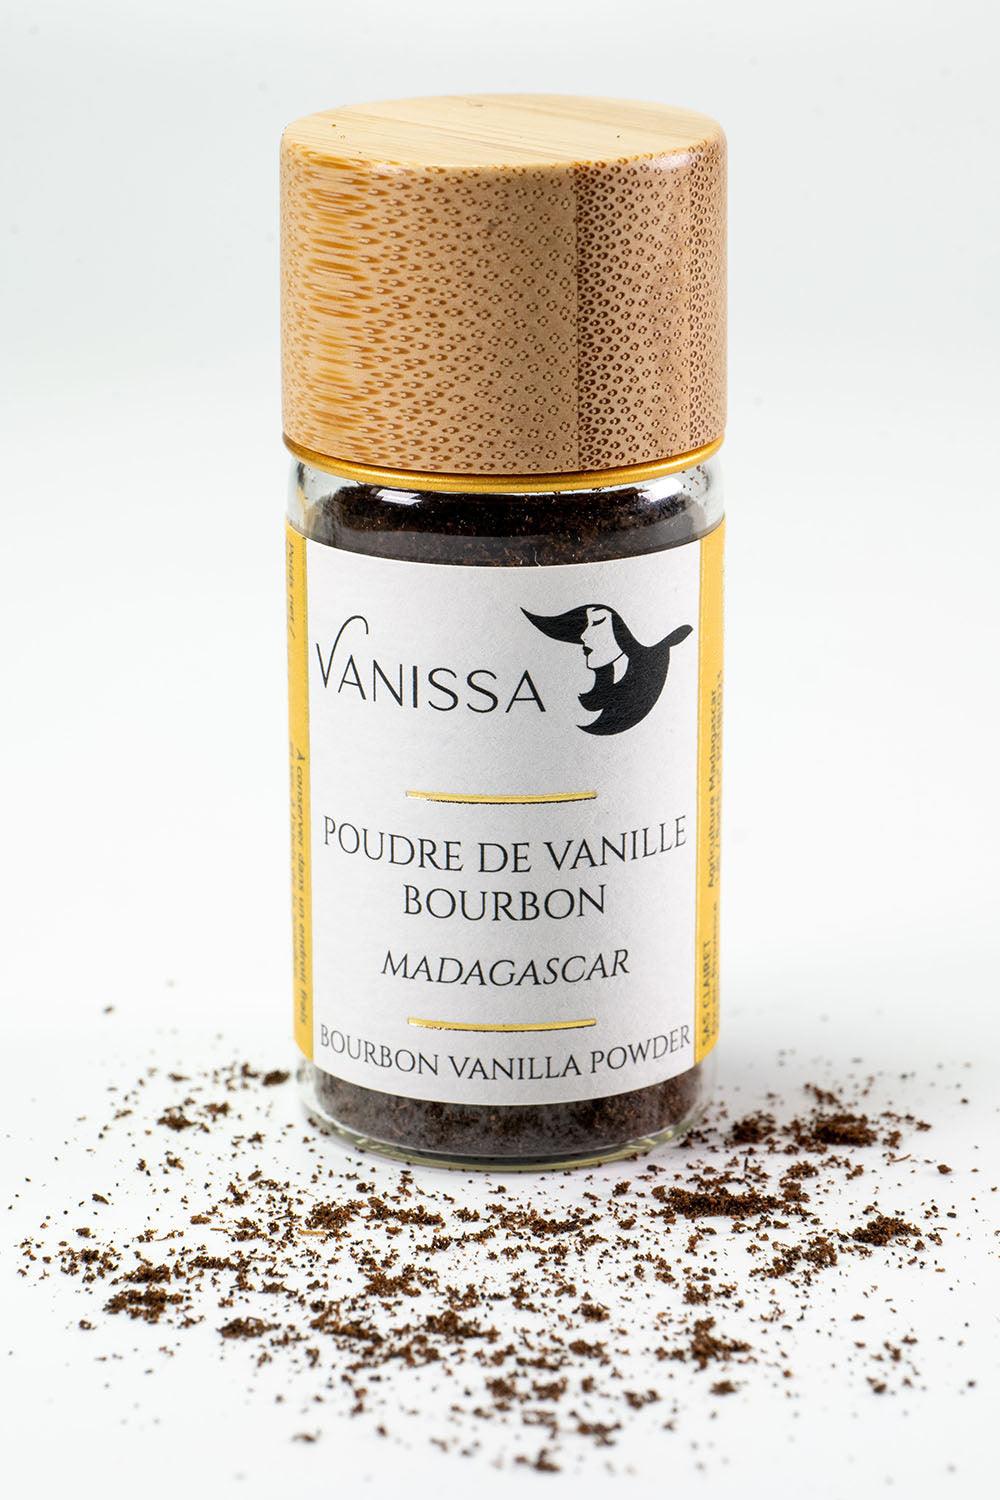 Poudre de Vanille Bourbon 100% Gousse - Madagascar - Vanissa